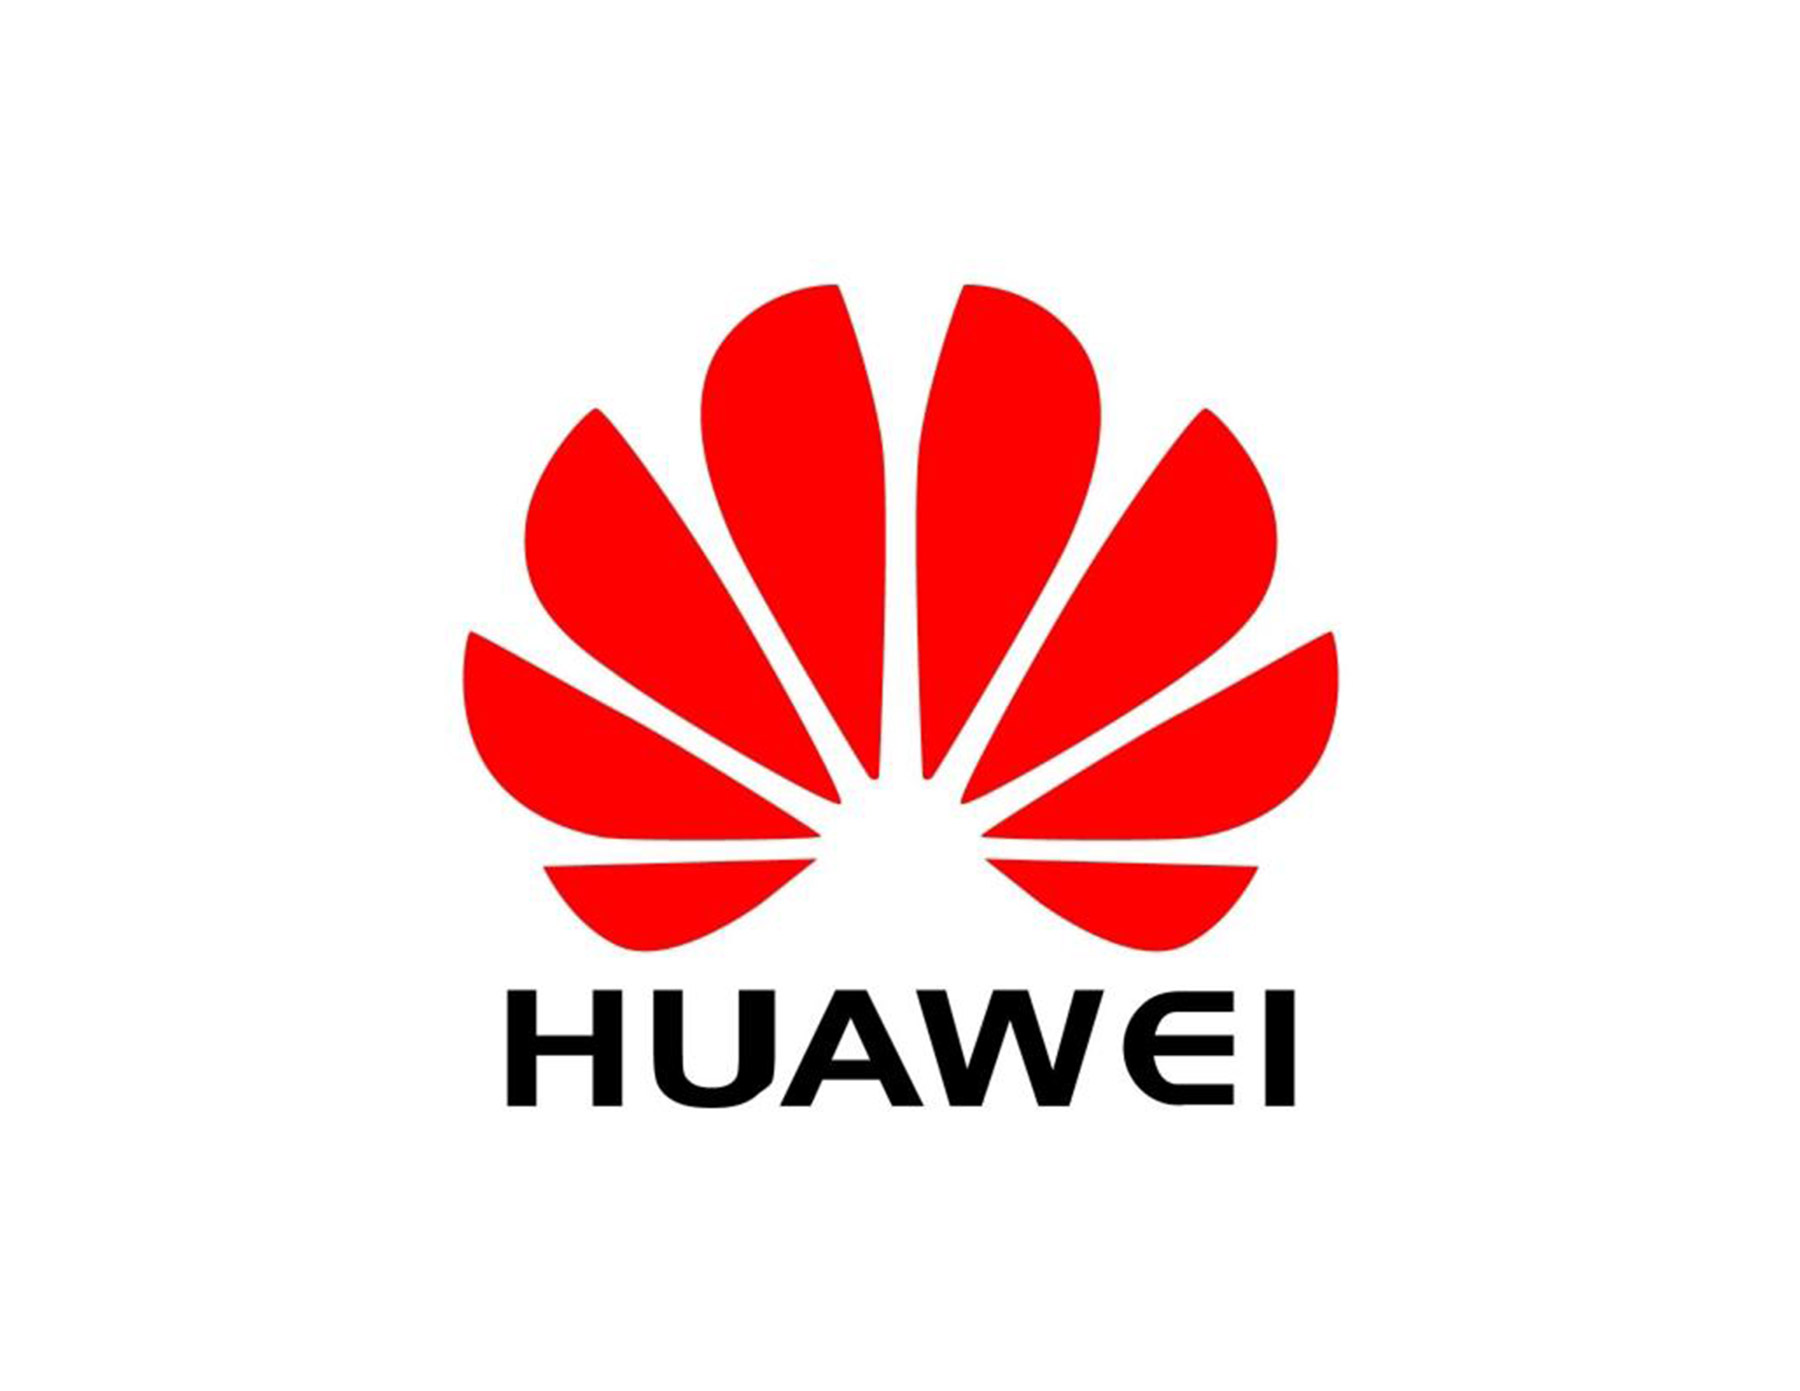 Huawei Logo Wallpapers - Top Free Huawei Logo Backgrounds - WallpaperAccess